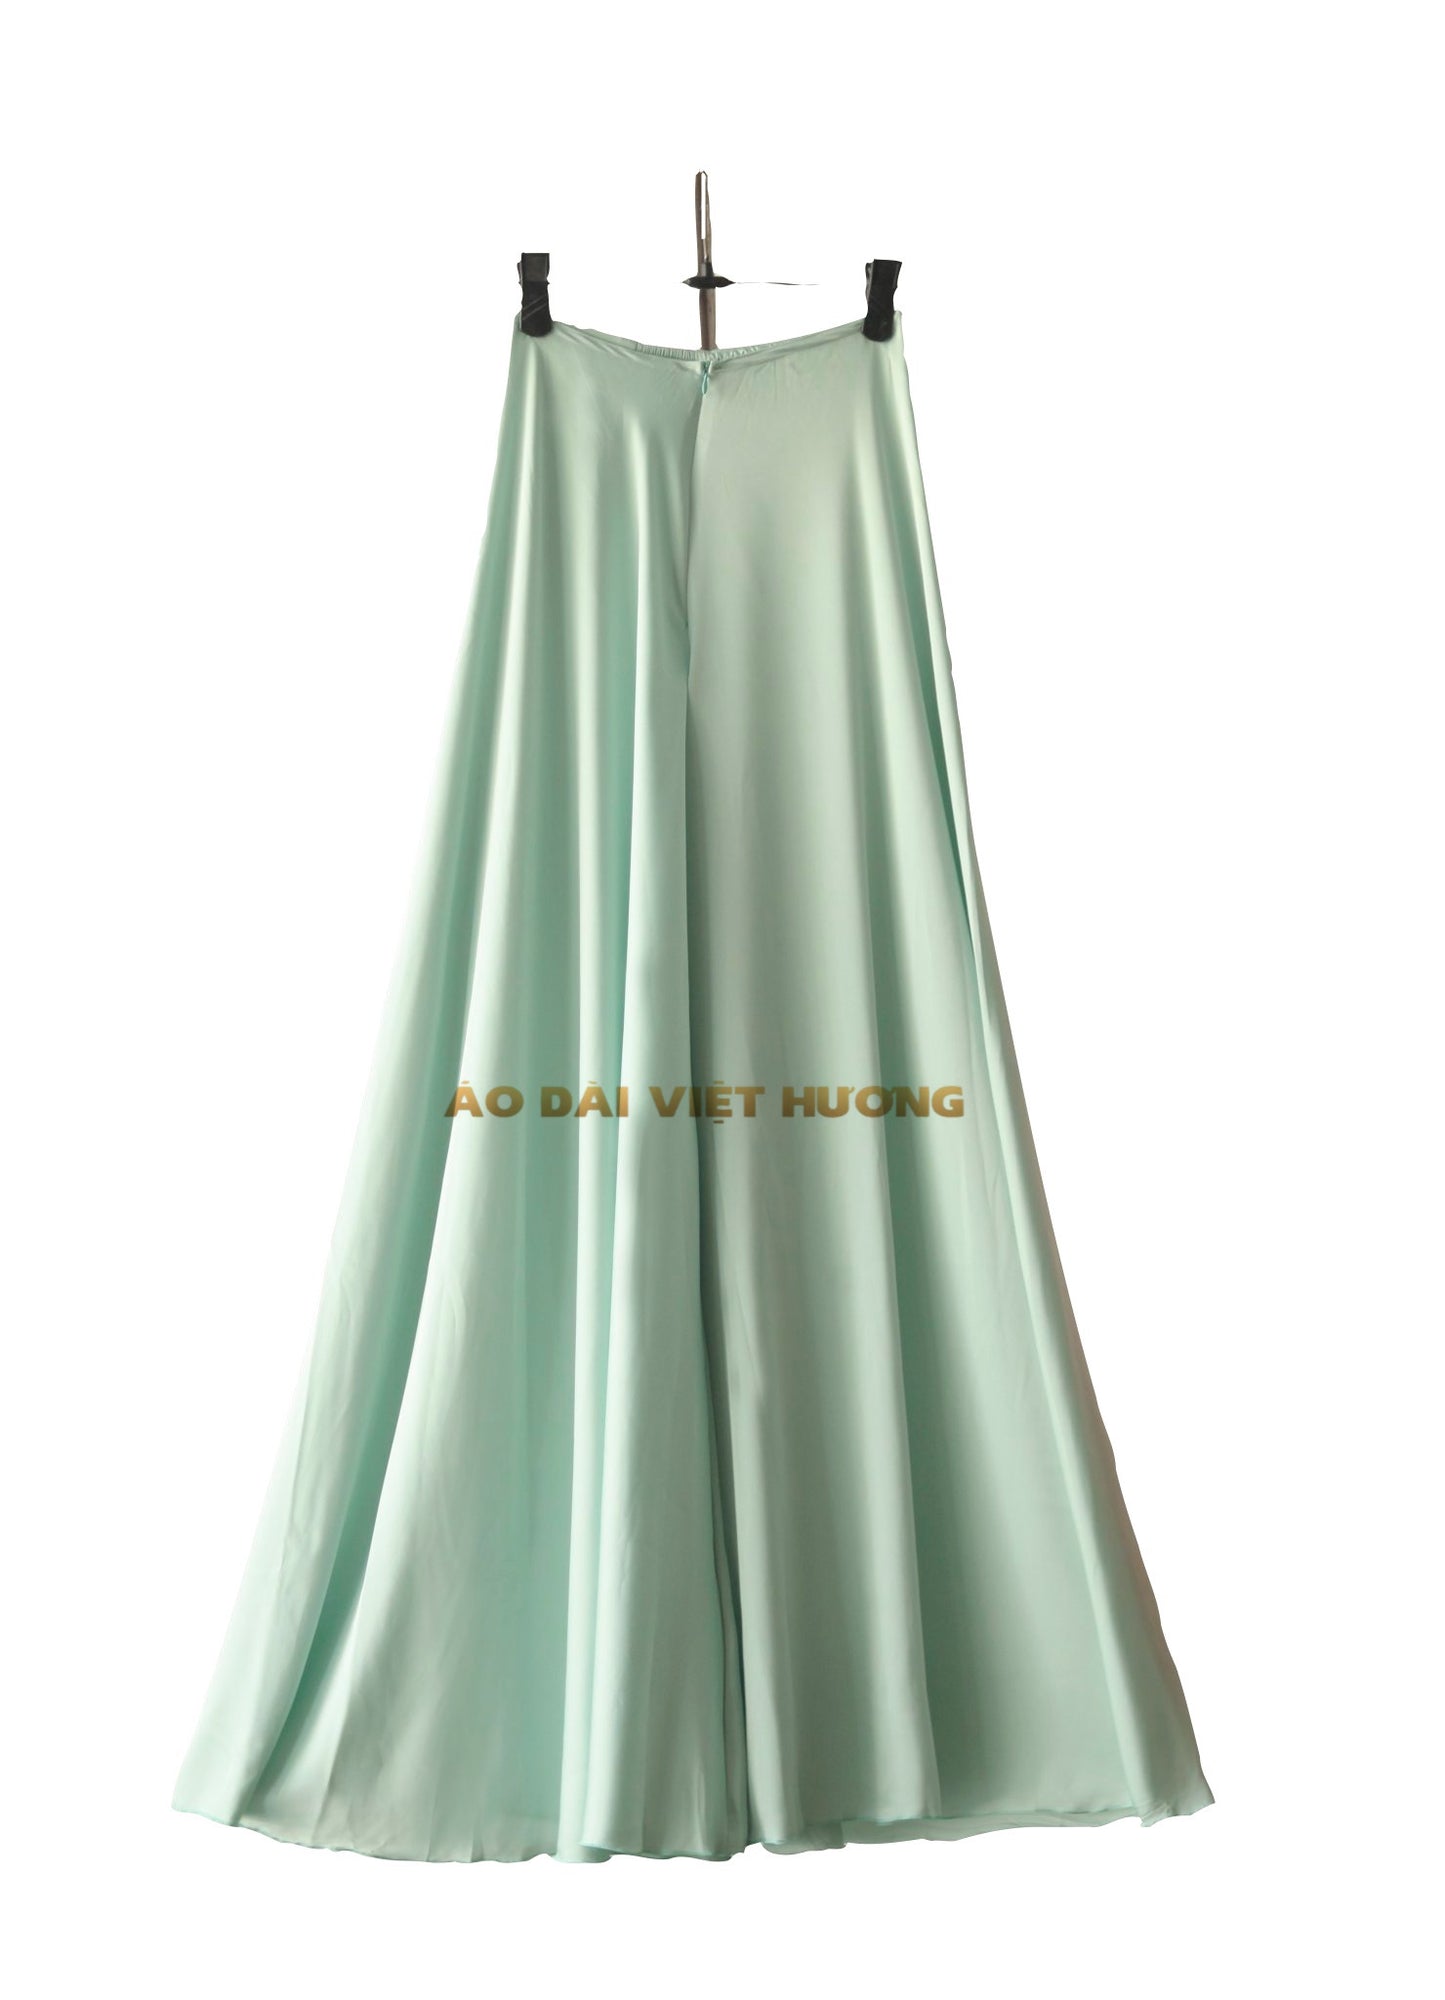 509 - Quần Váy Lụa Thái Tuấn Màu Ngọc Lam Nhẹ (Quần Váy Ống Xéo Lụa Thái Tuấn Xanh Ngọc)